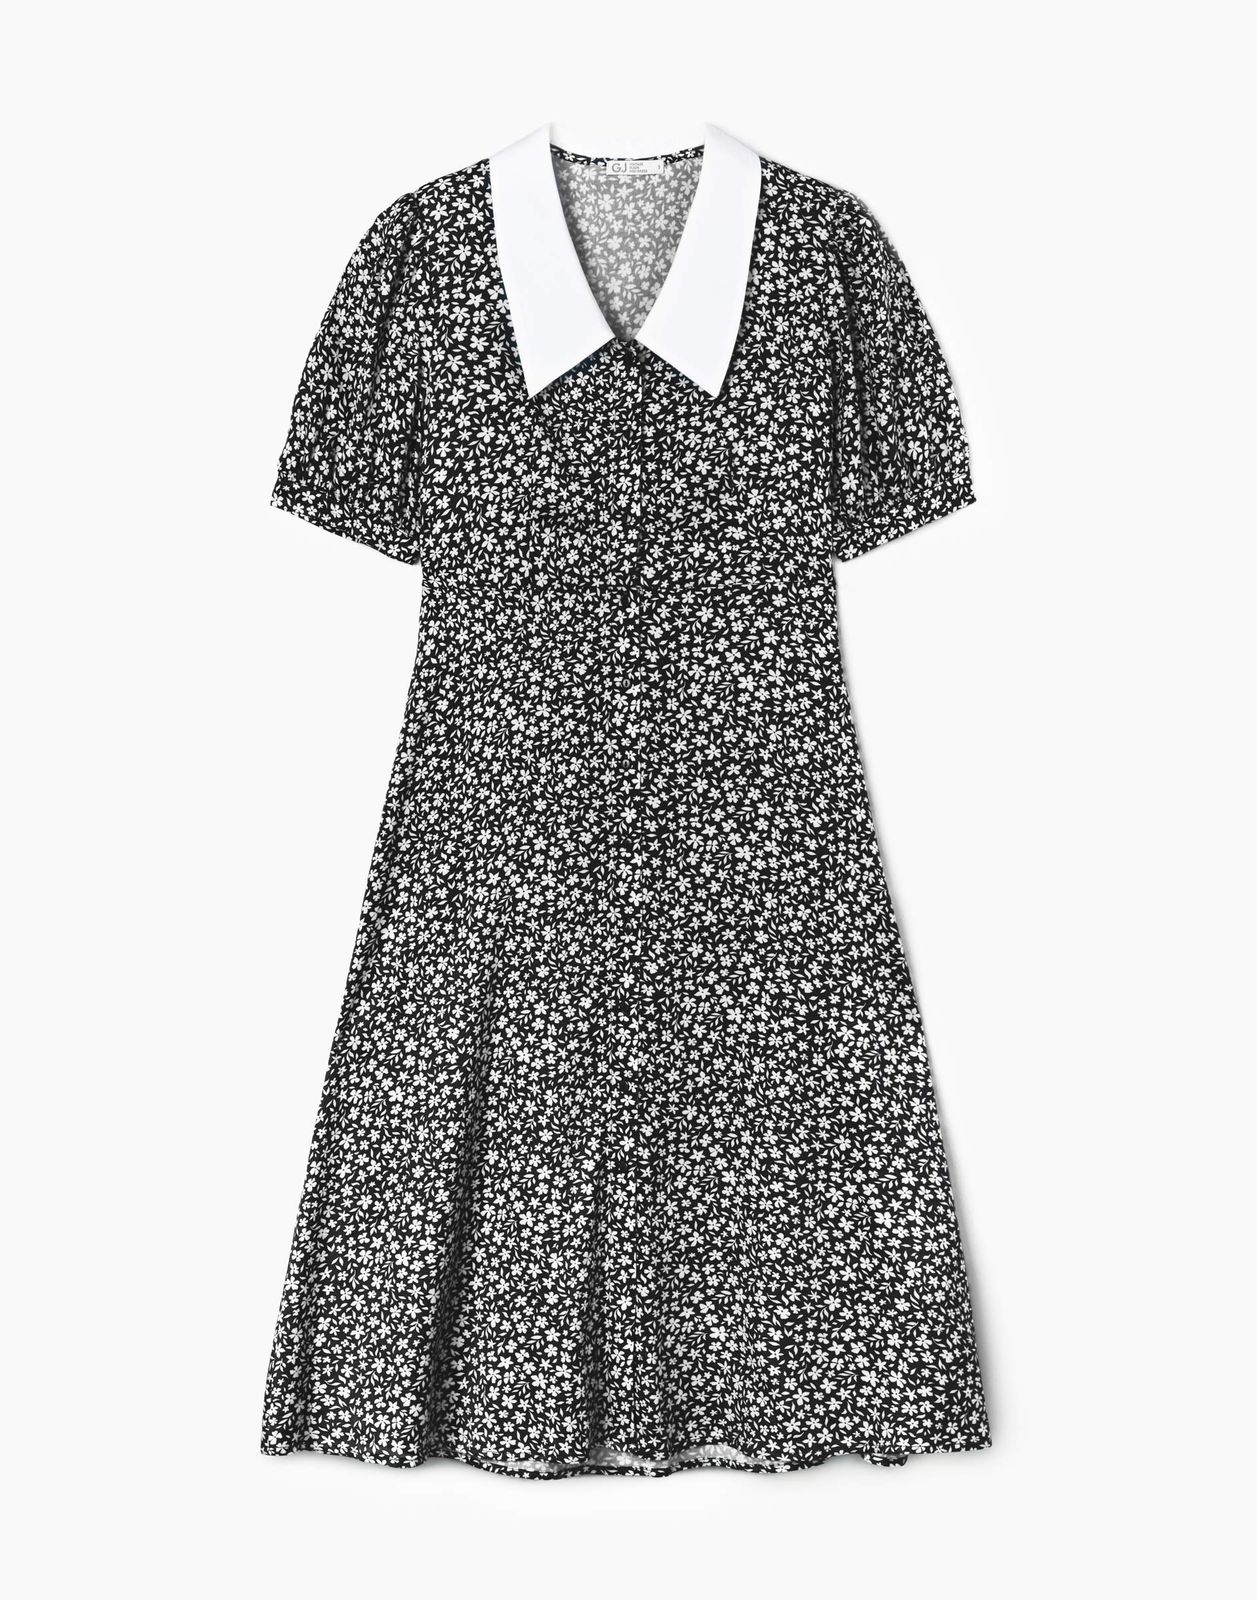 Платье женское Gloria Jeans GDR028761 черный/белый M/170